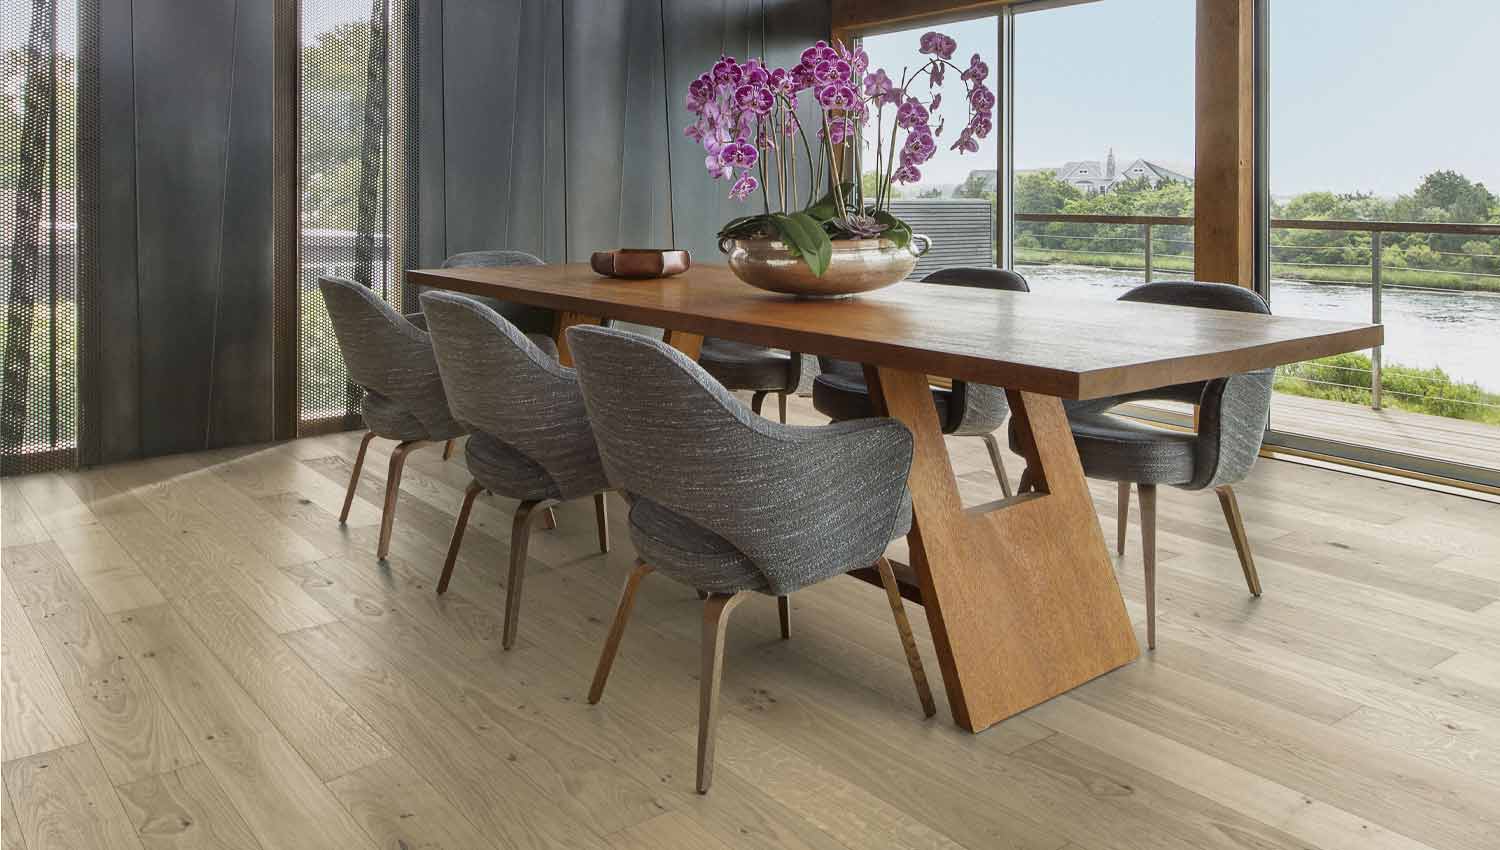 Dining room scene with oak hardwood flooring and purple flowers